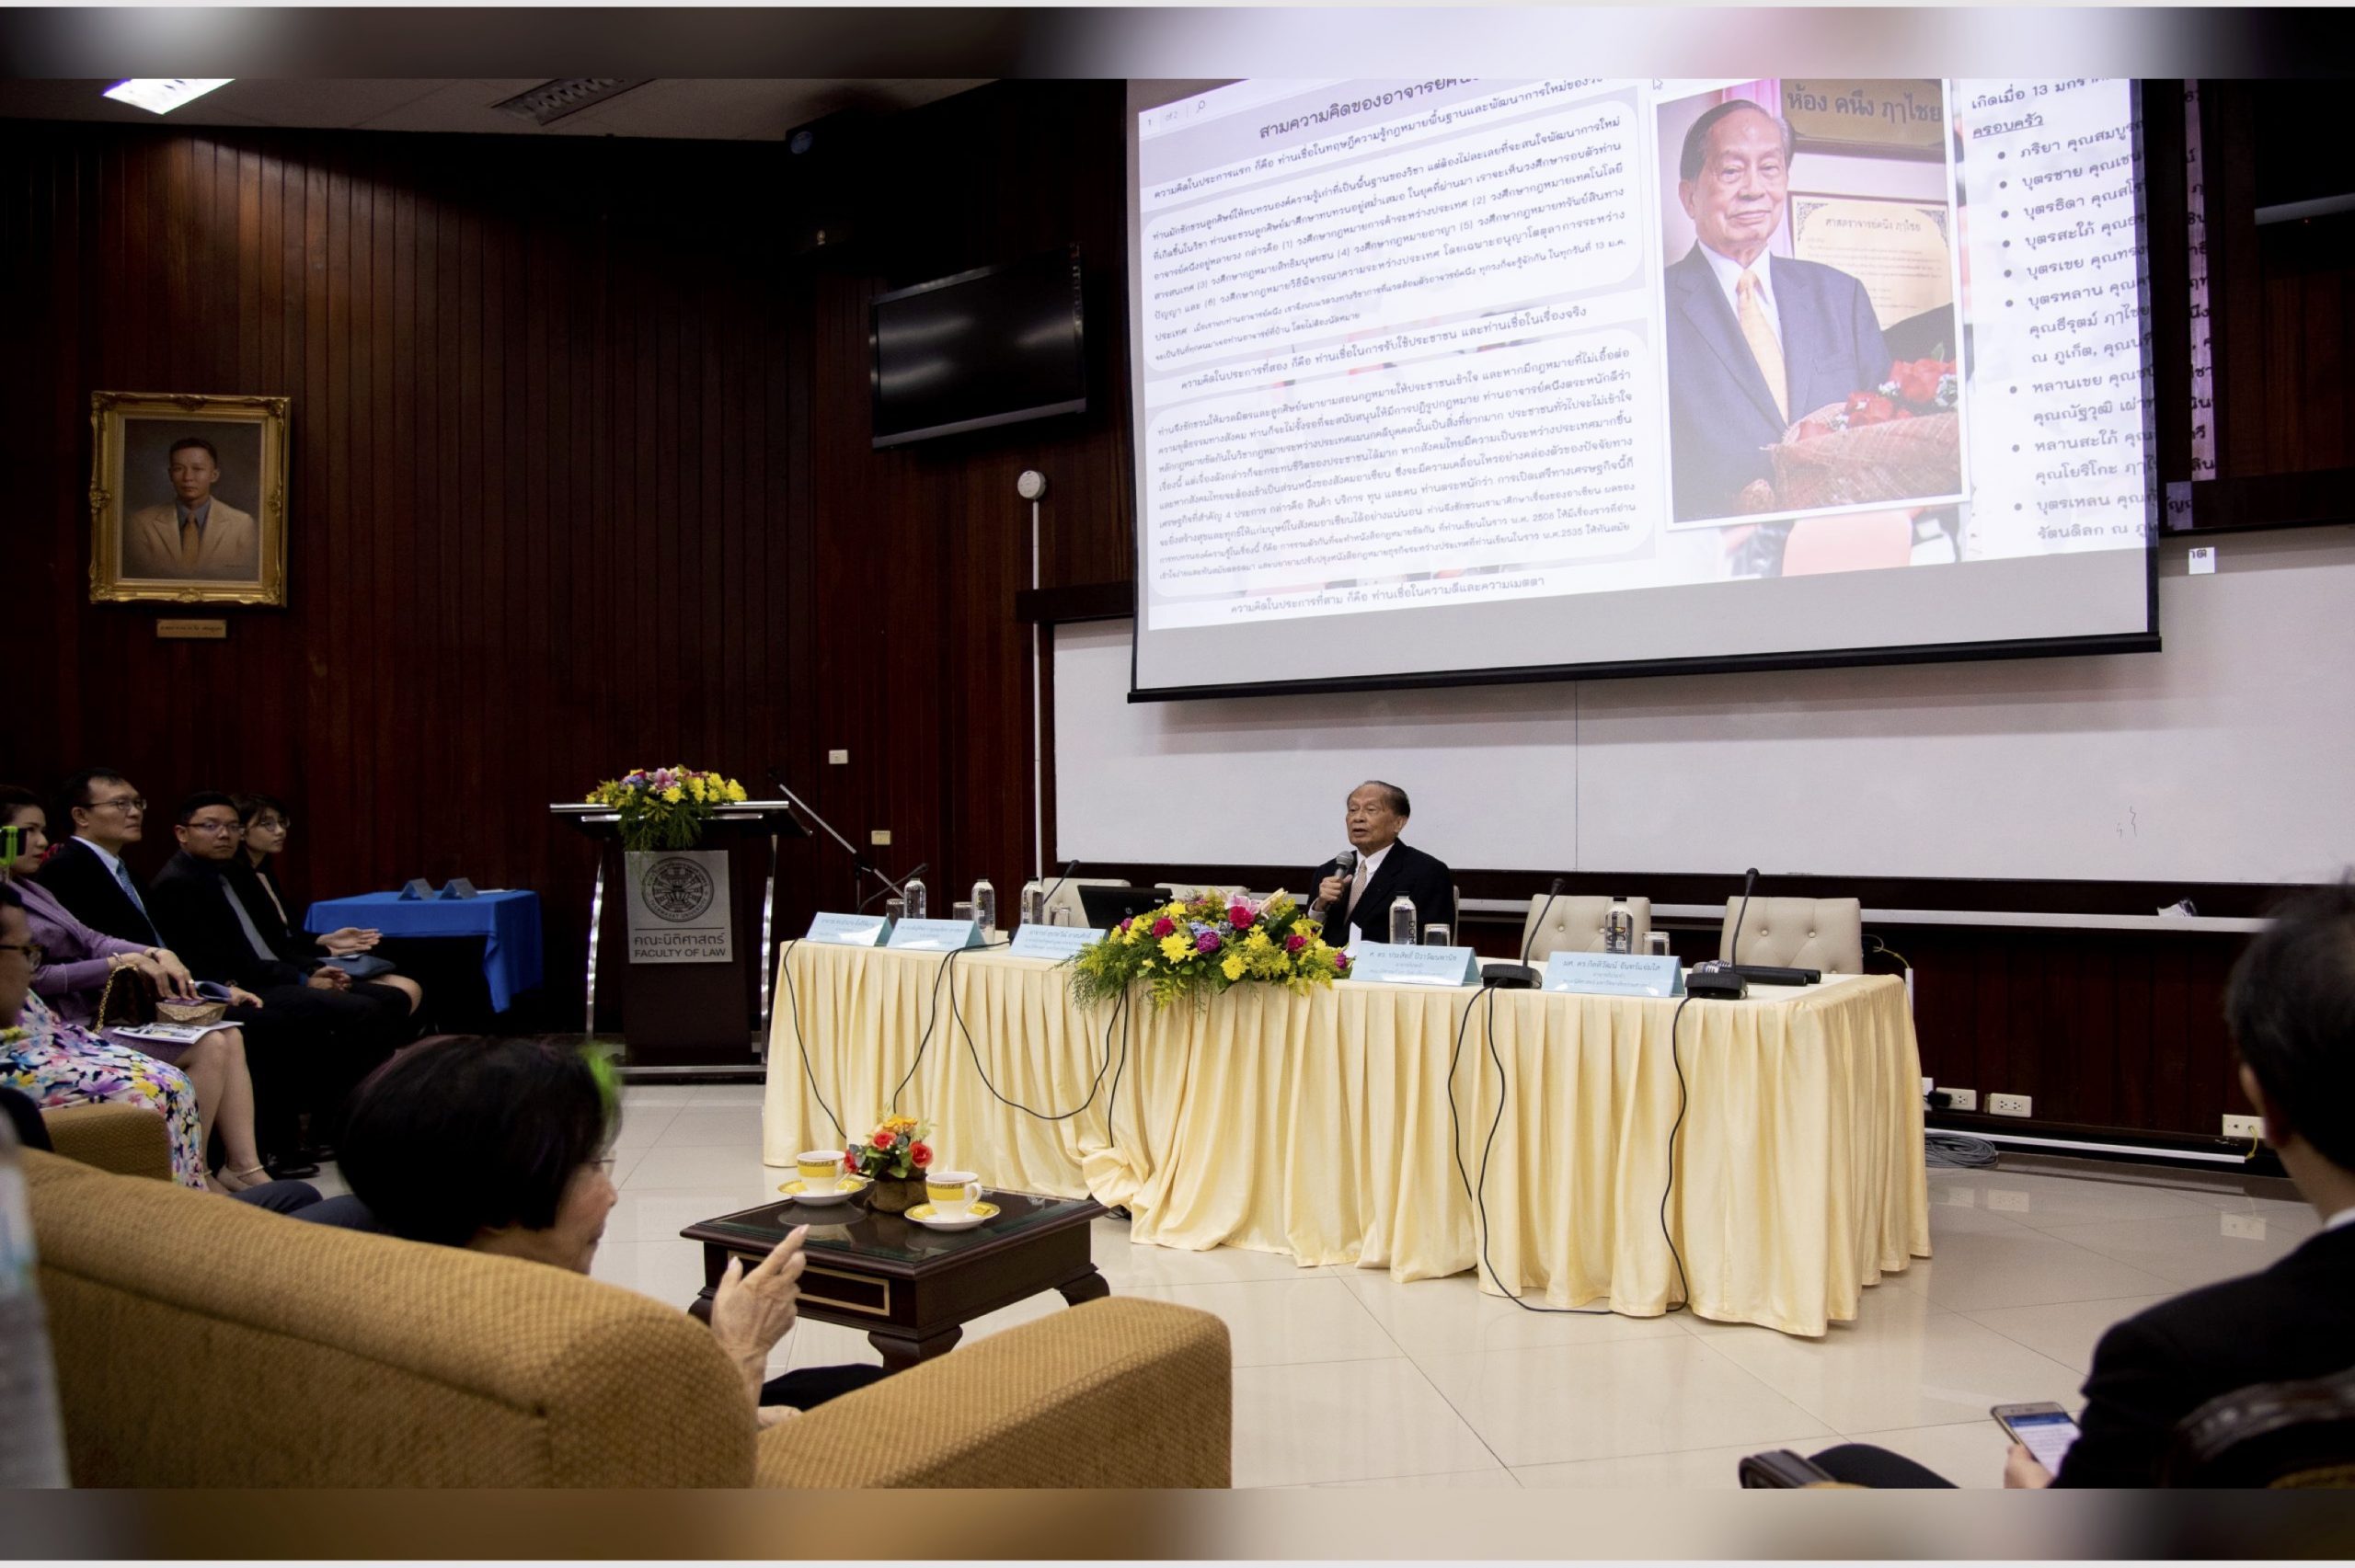 สรุปสาระสำคัญจากโครงการงานวิชาการรำลึก TU Law Conference ปาฐกถานิติศาสตร์ ธรรมศาสตร์ ชุด ศาสตราจารย์ คนึง ฦๅไชย (ประจำปี 2562)